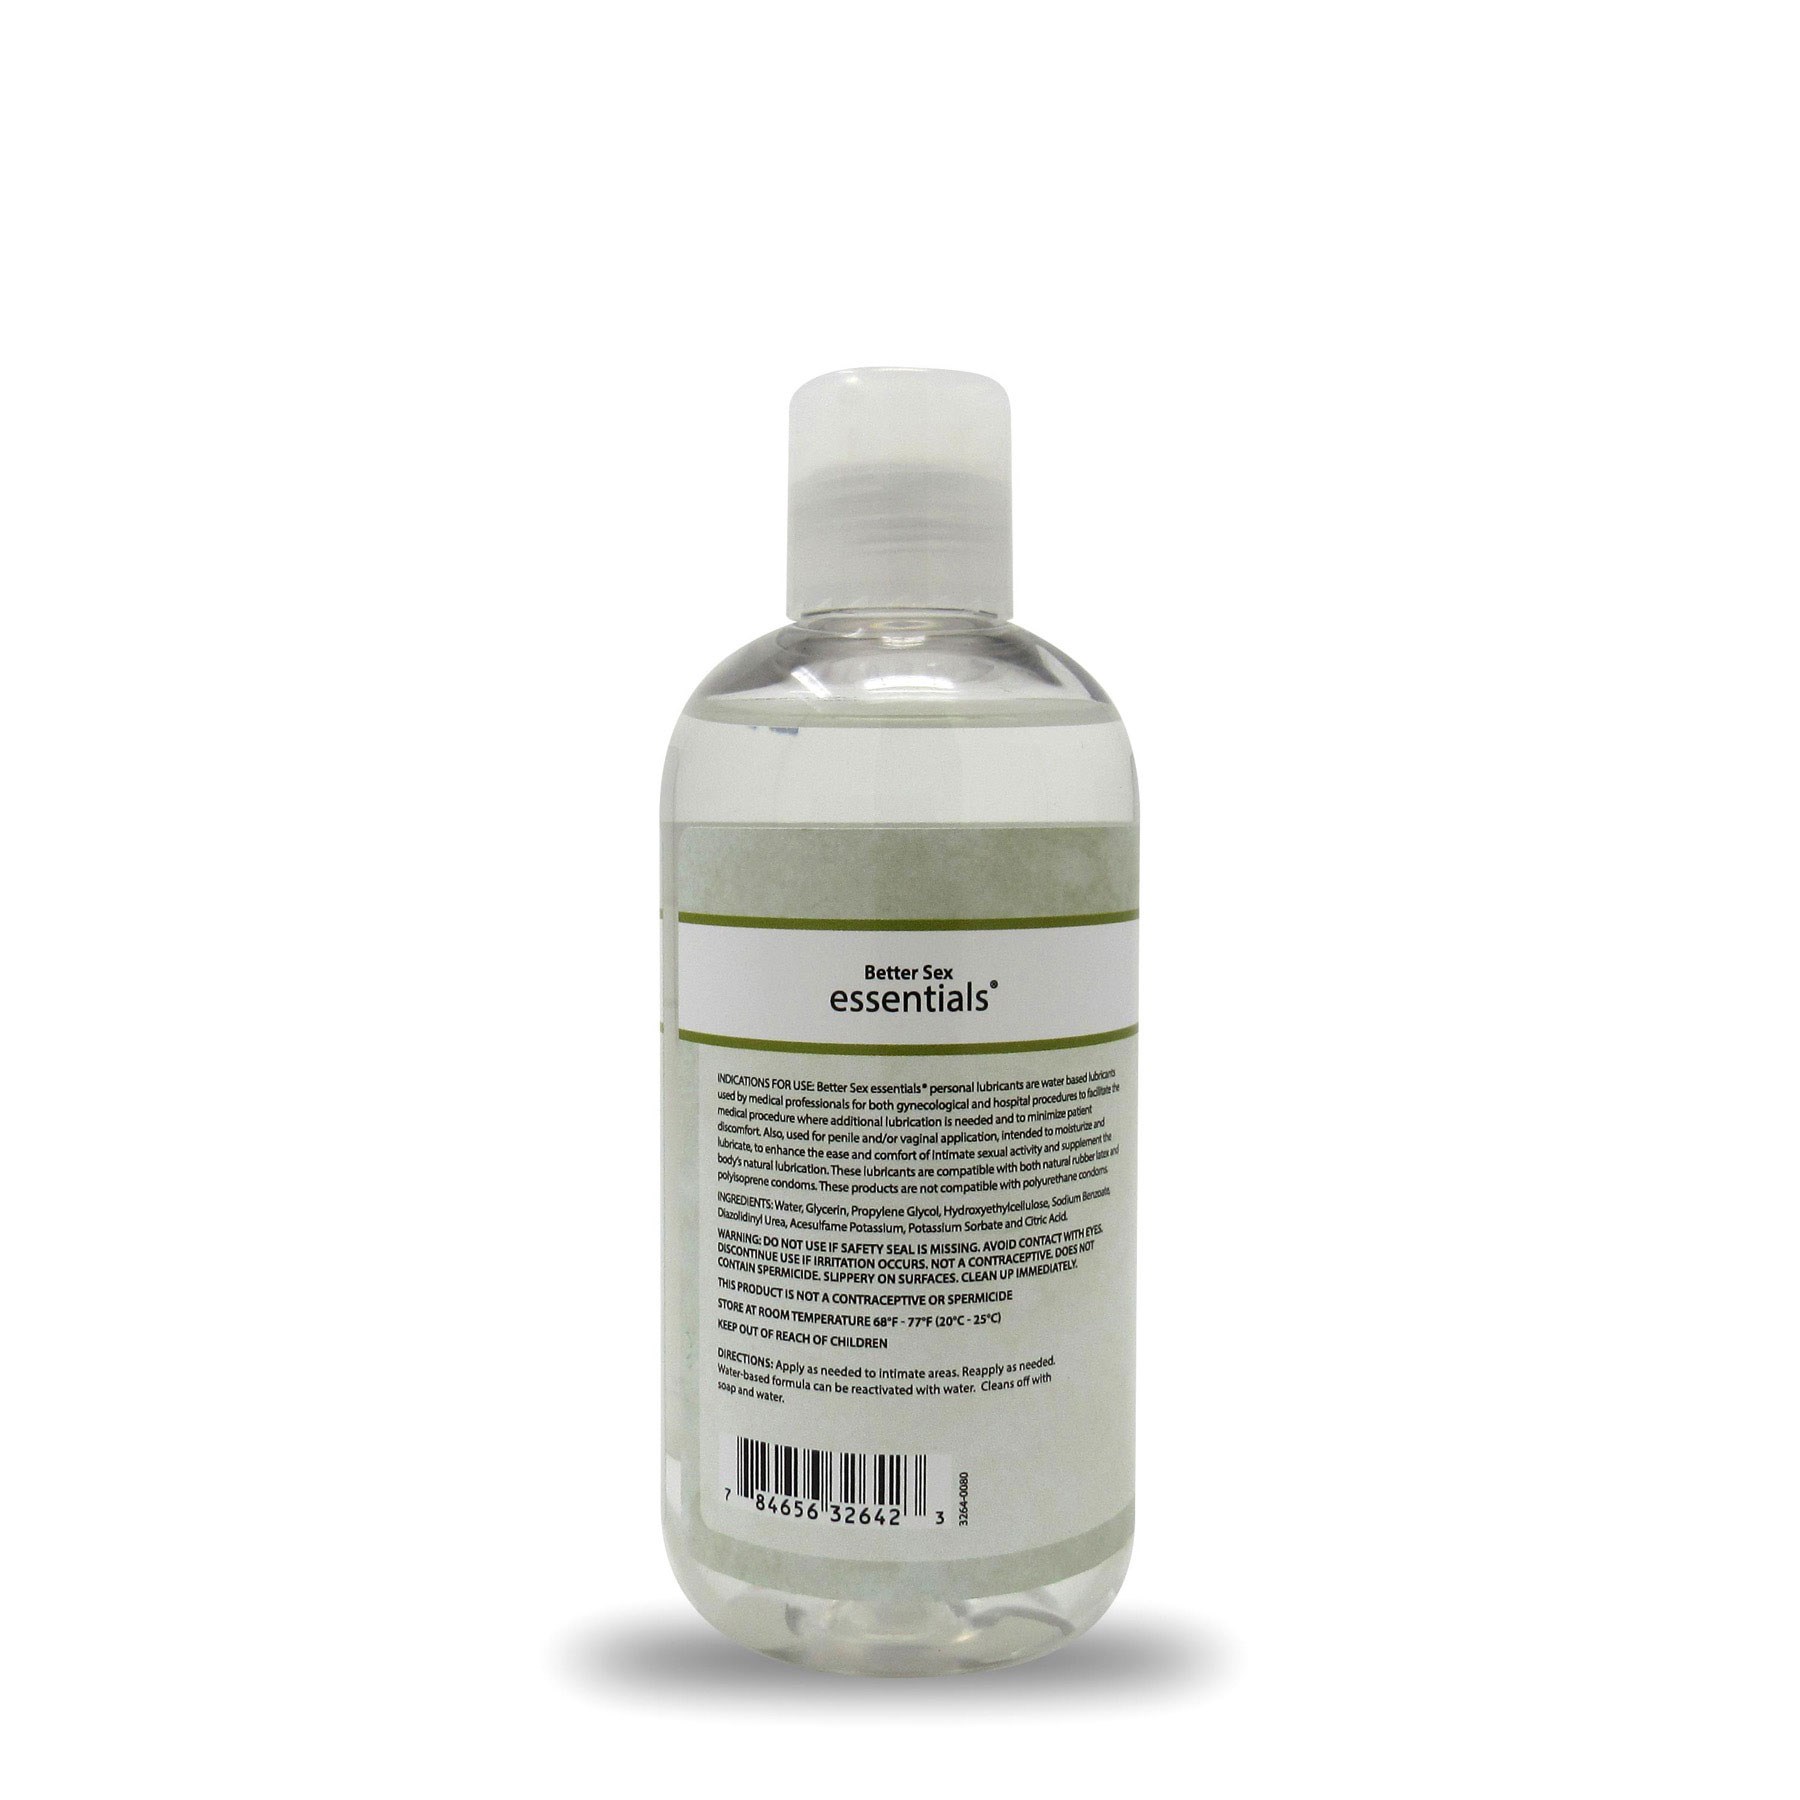 BetterSex Essentials Liquid Lubricant